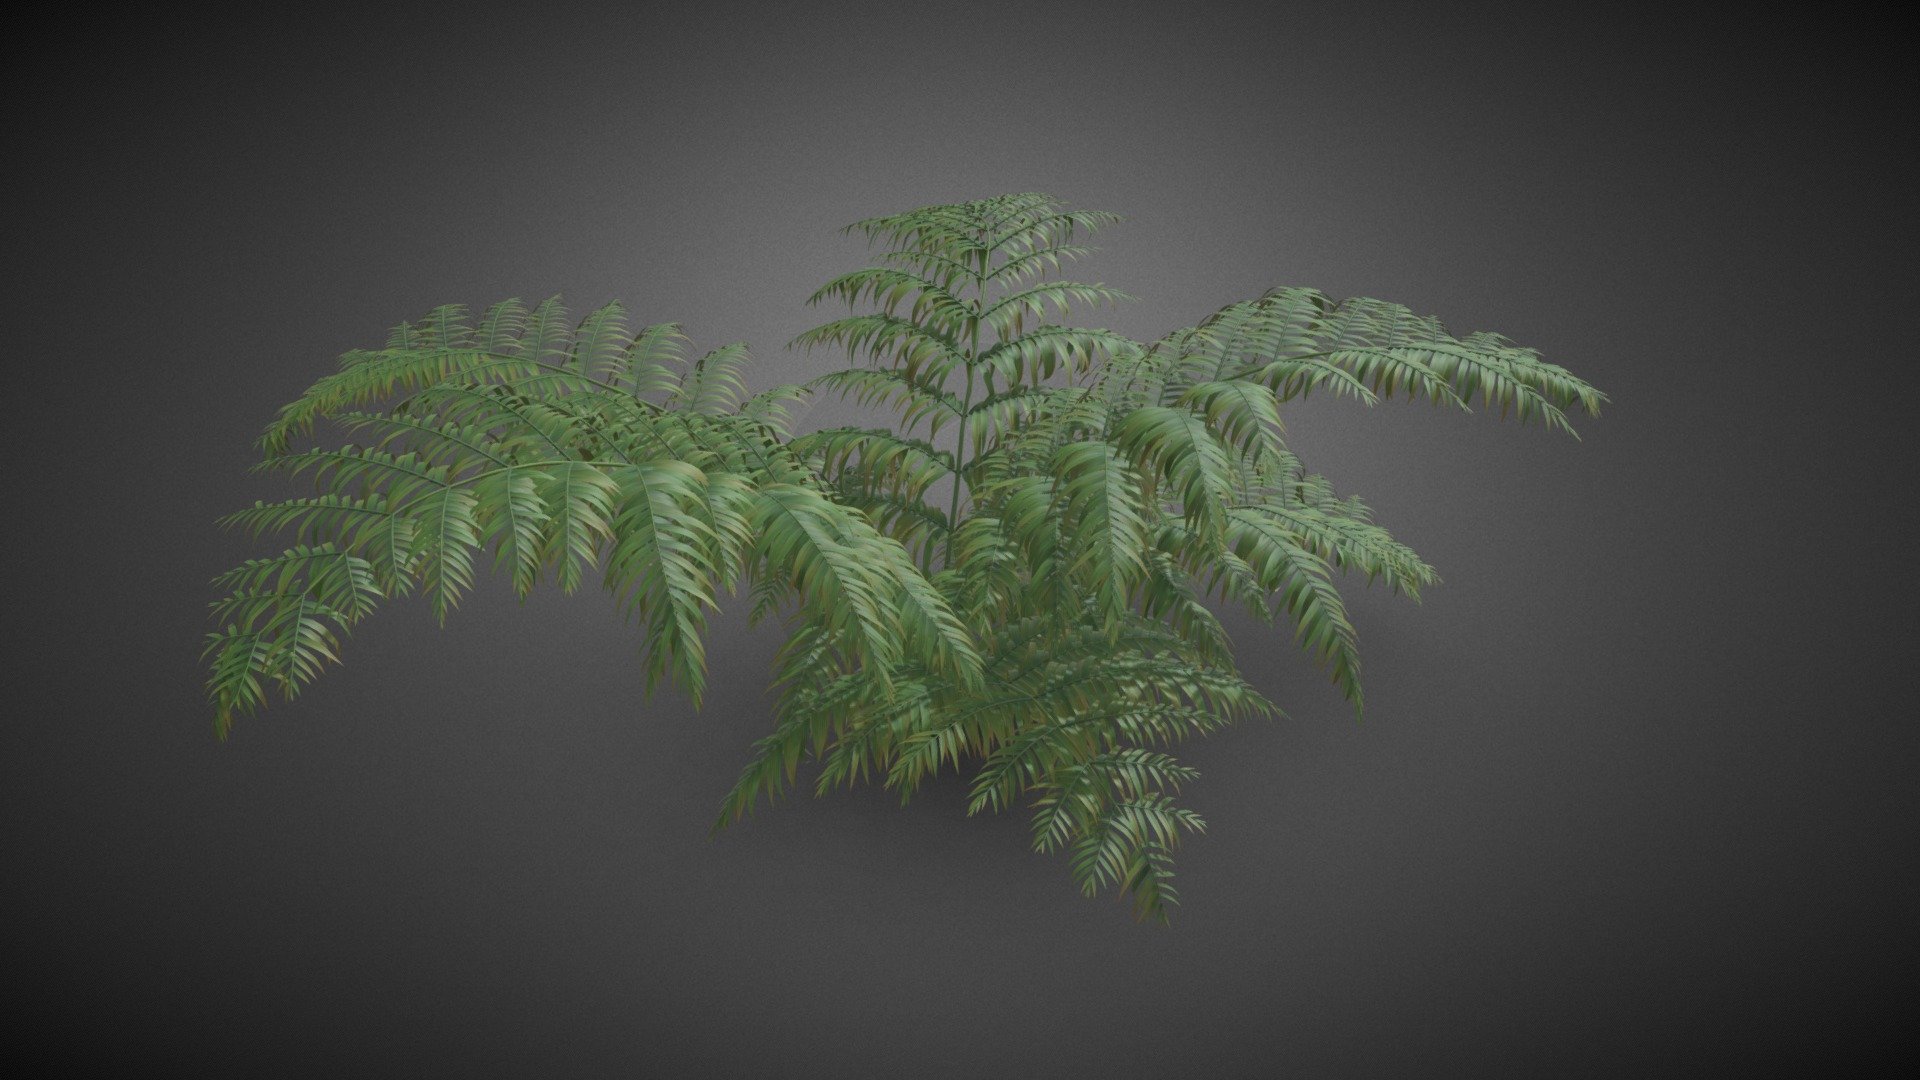 Ferns shrub flower - Ferns shrub flower - Buy Royalty Free 3D model by misitewang 3d model